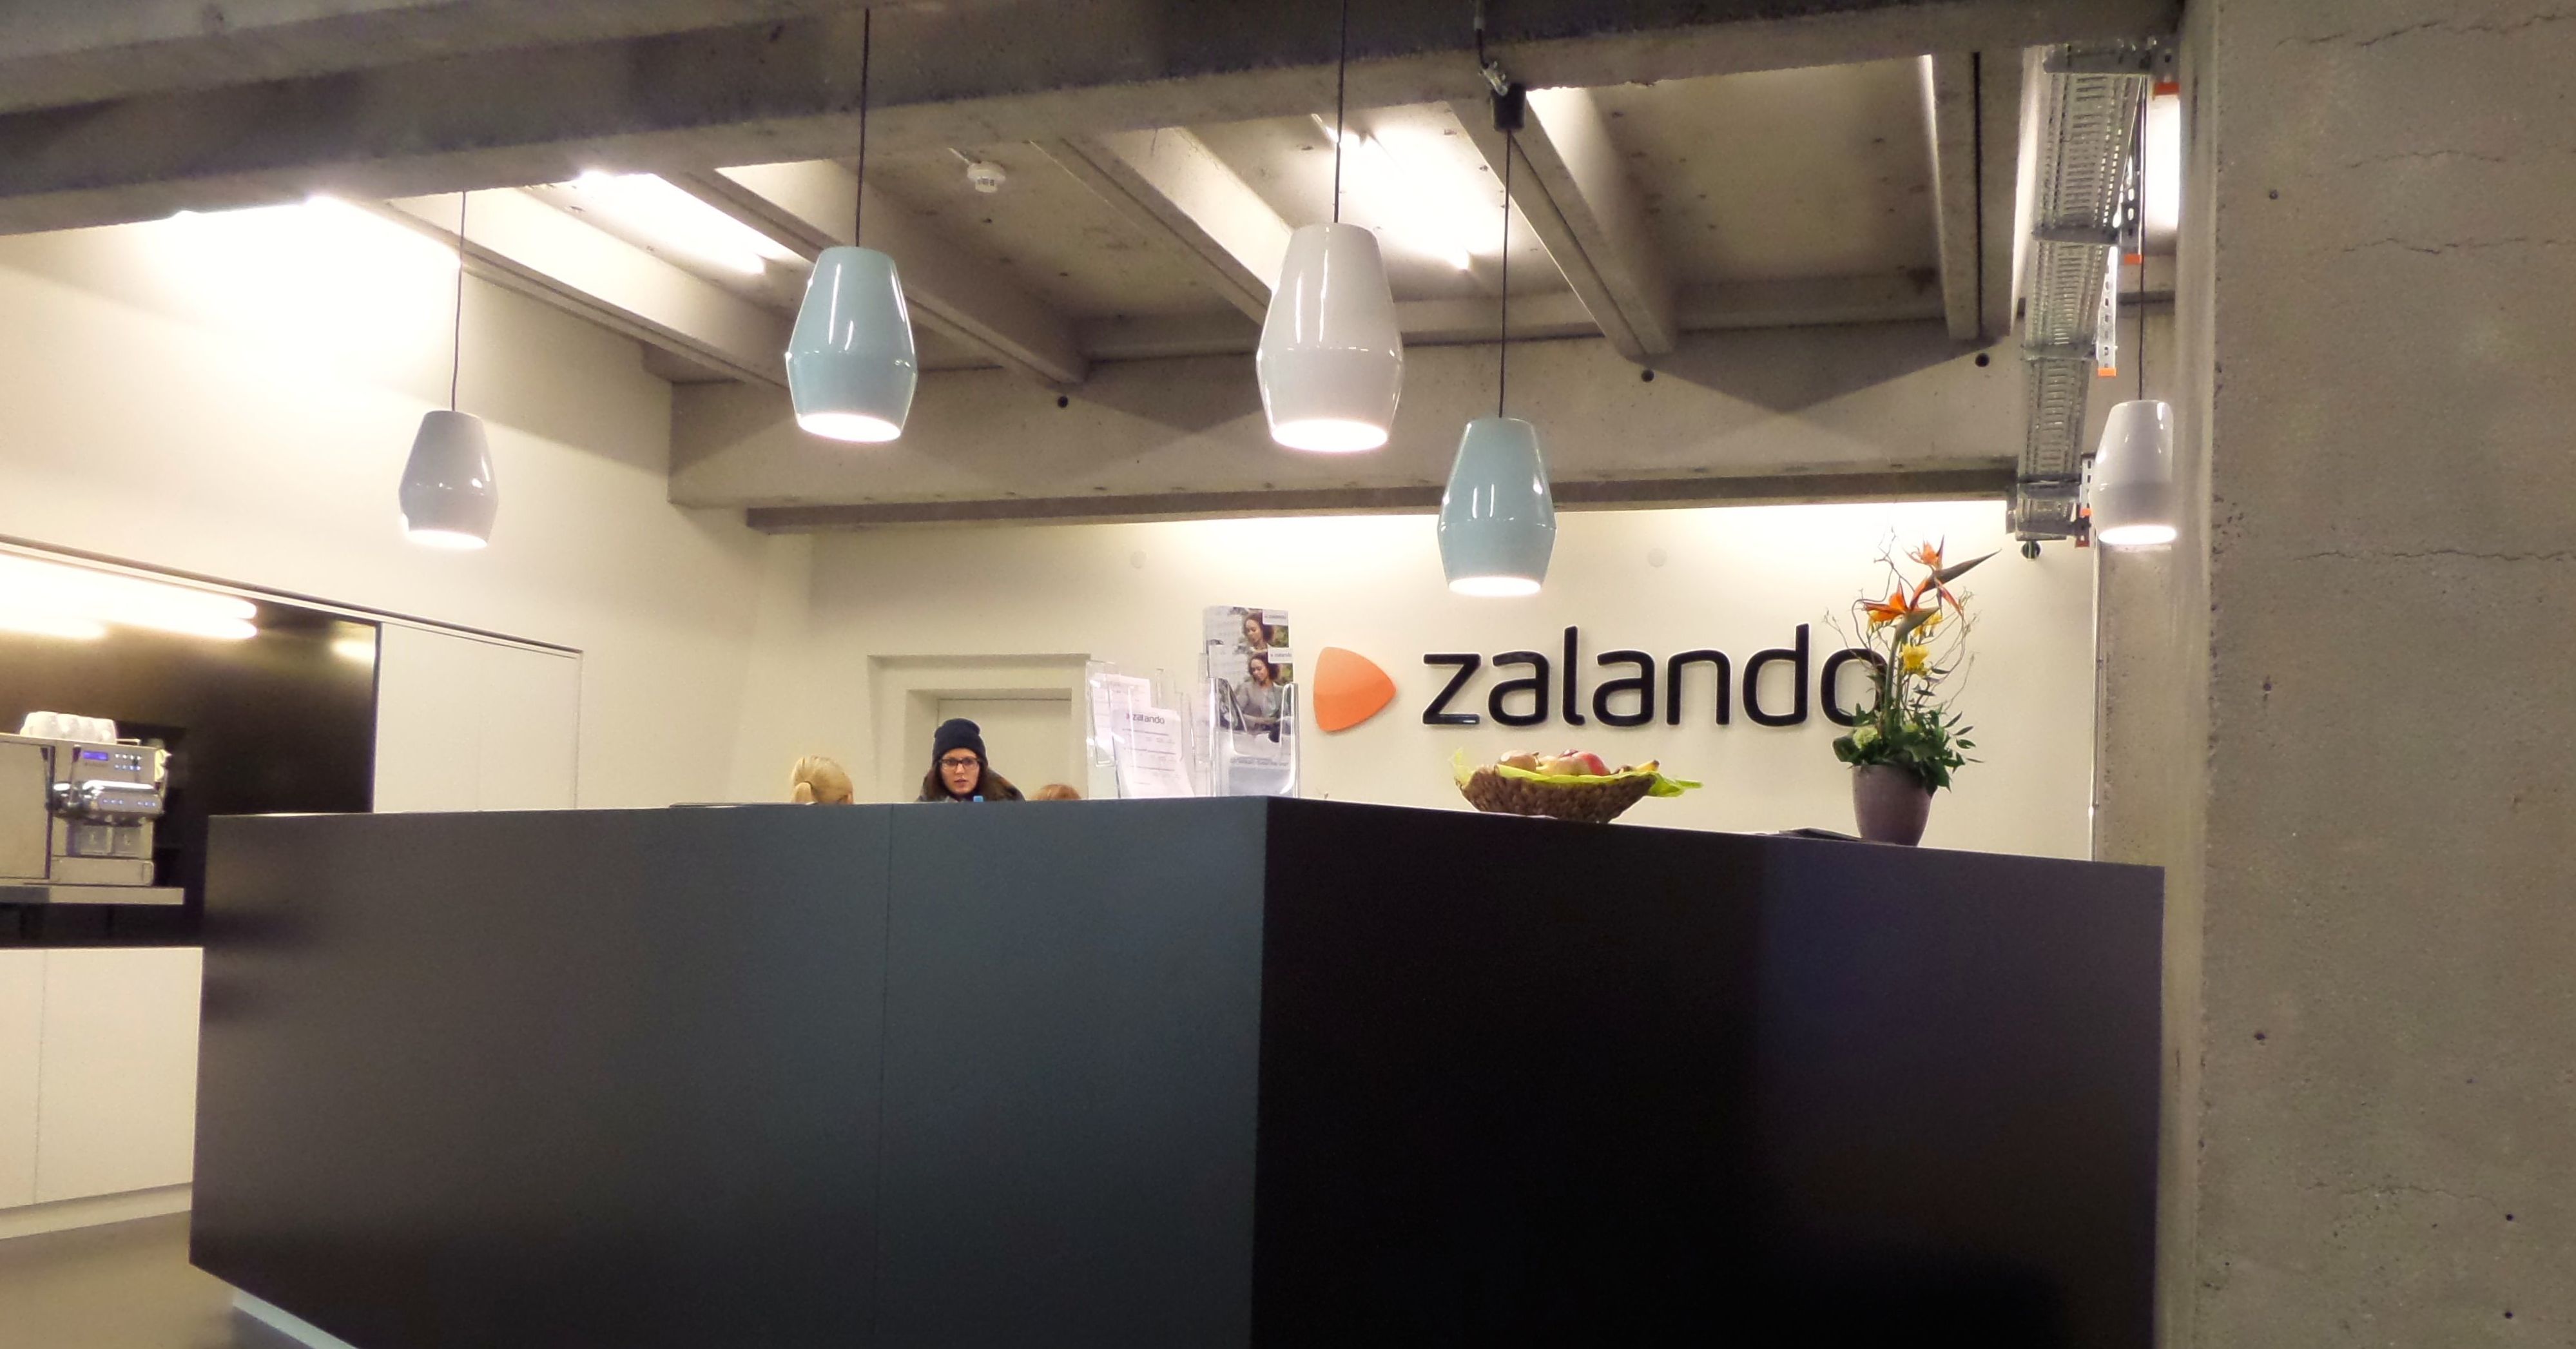 How big is European online fashion retail giant Zalando?